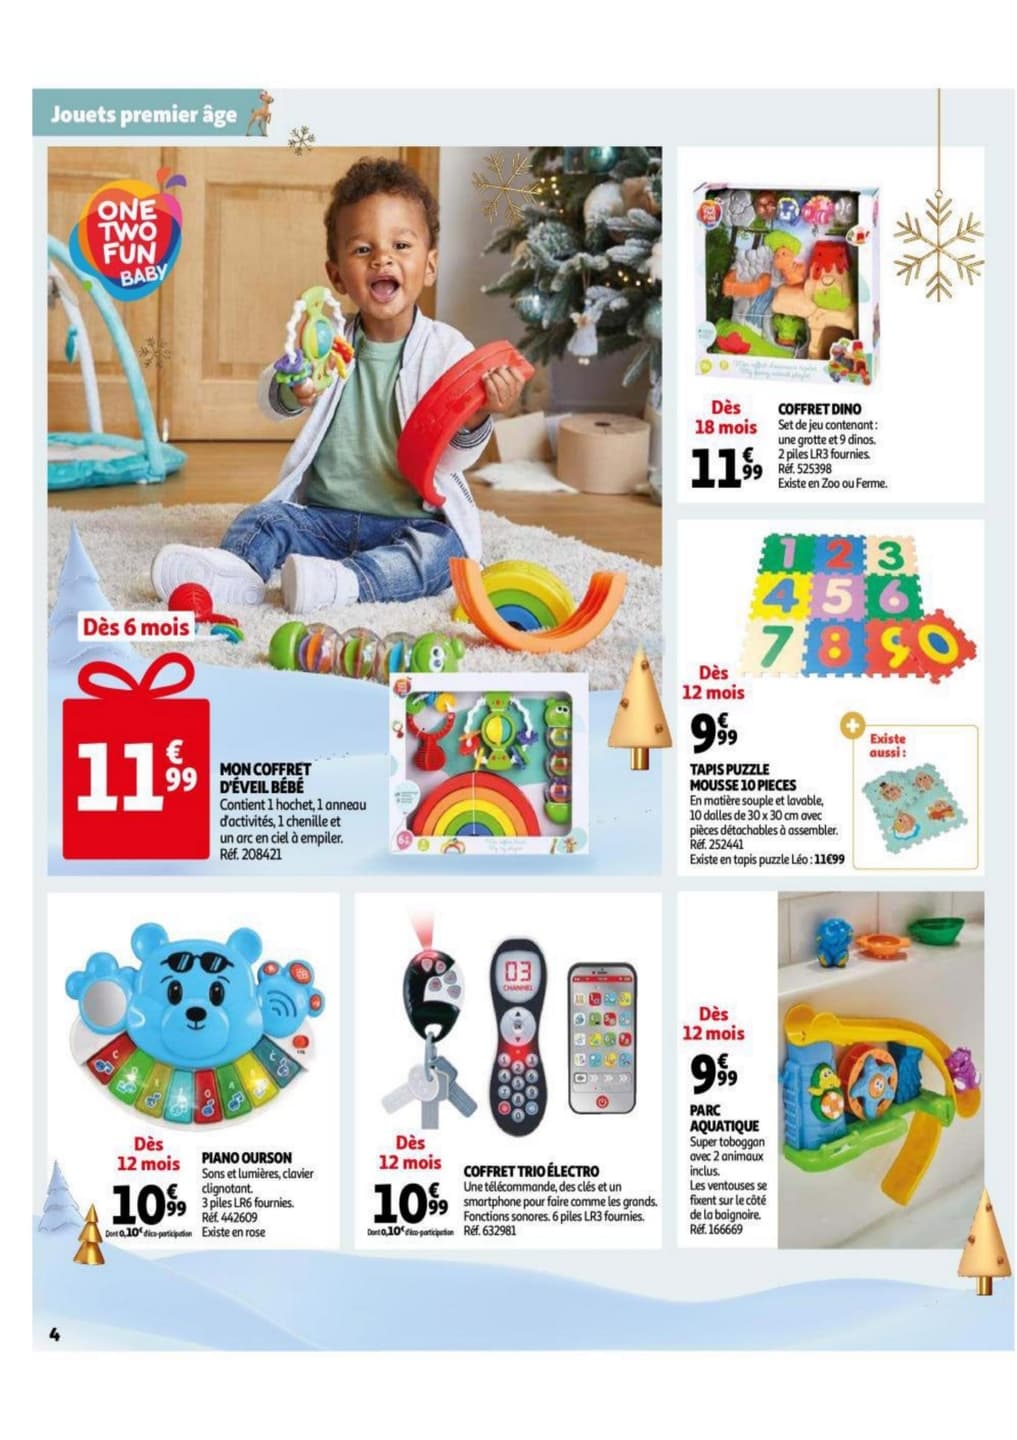 Auchan : cette promotion sur ce Babyfoot est incroyable pour Noël